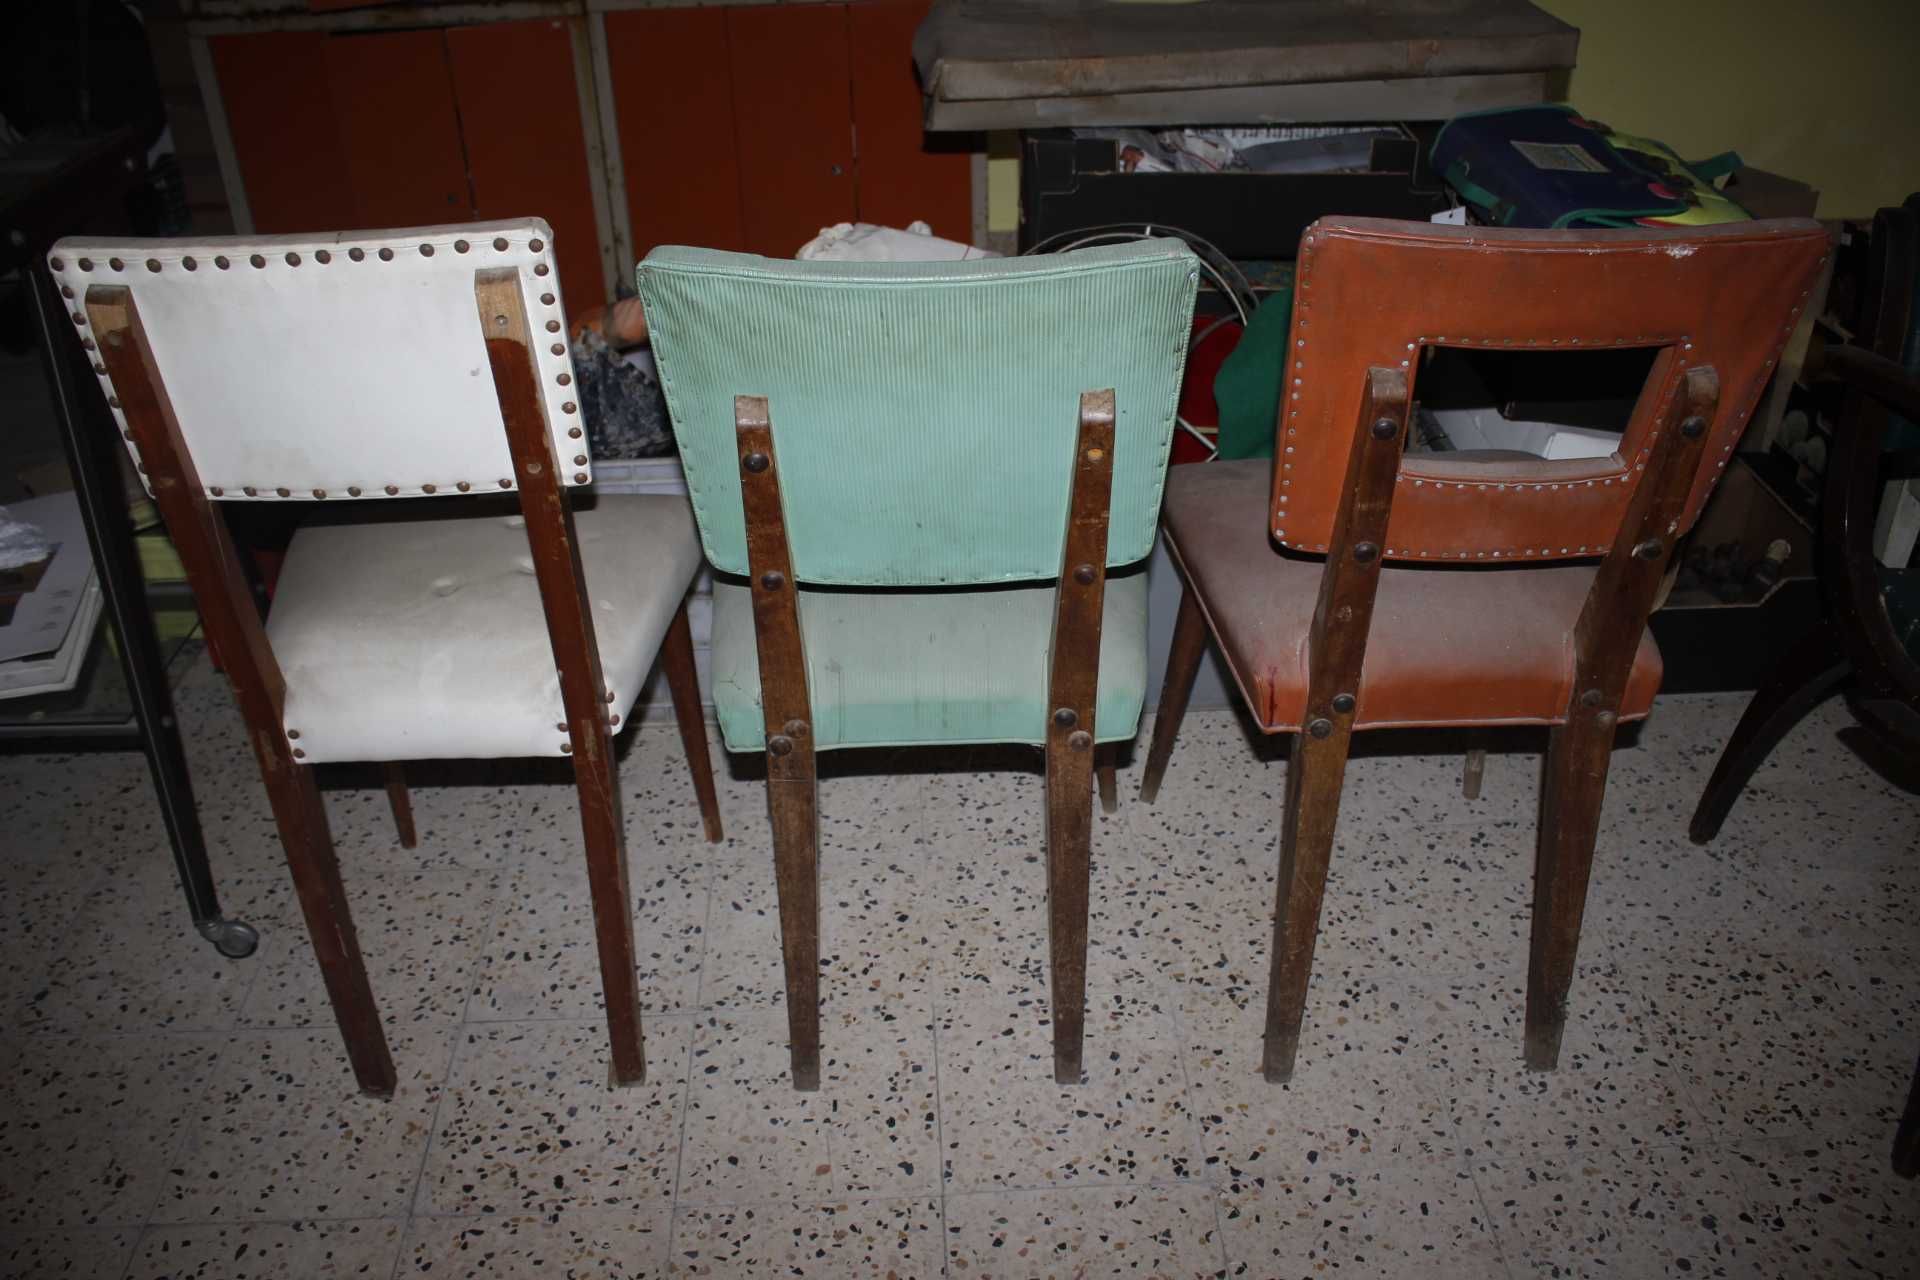 Cadeiras Vintage Retro - Madeira - Design Nacional